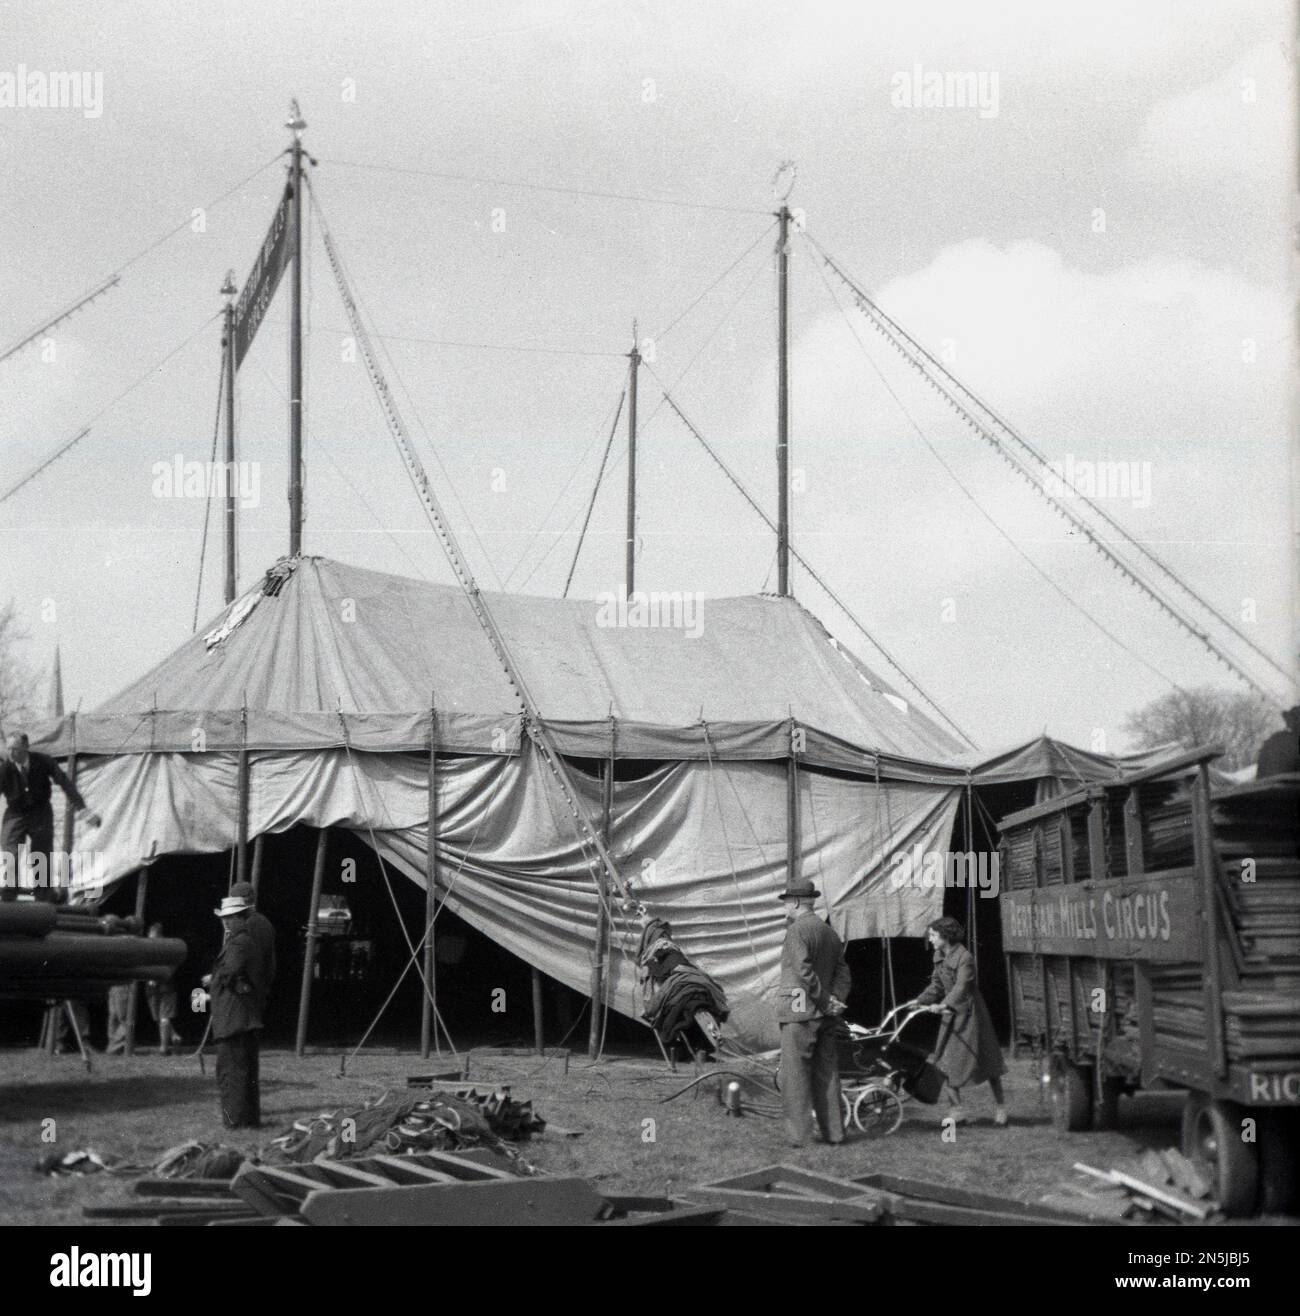 1955, historisch, kommt der Zirkus in die Stadt und baut das große Zelt des Bertram Mills Zirkus, Cambridge, England, Großbritannien, eine Mutter mit einem Kinderwagen, die an einem Lastwagen und Zirkusarbeitern vorbeiläuft. Stockfoto